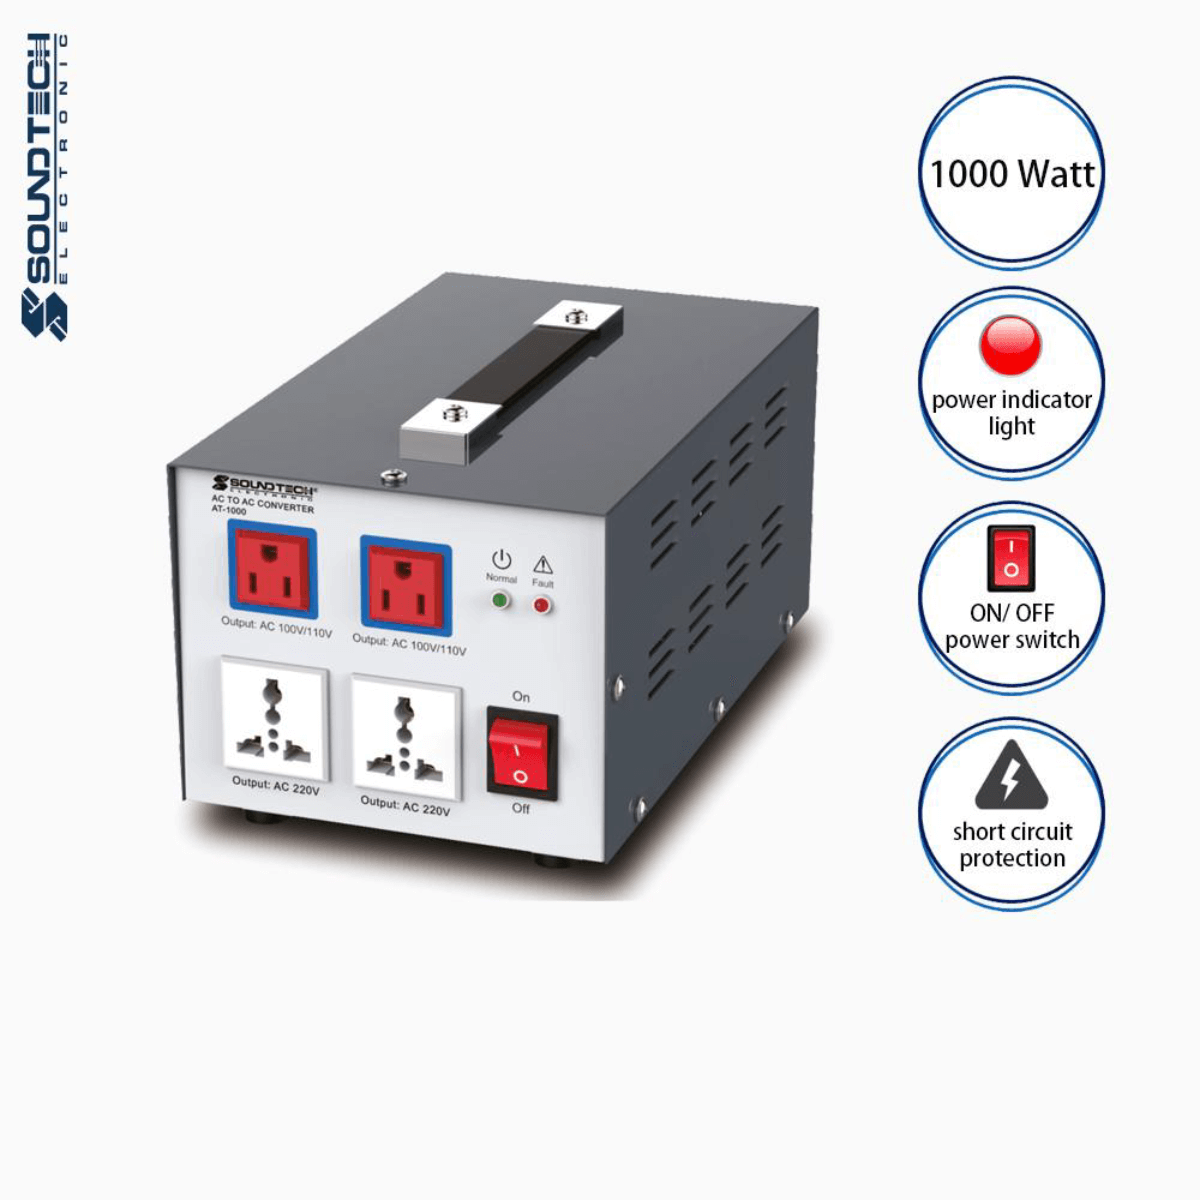 Soundteoh 1000 Watt AC-AC Converter AT-1000